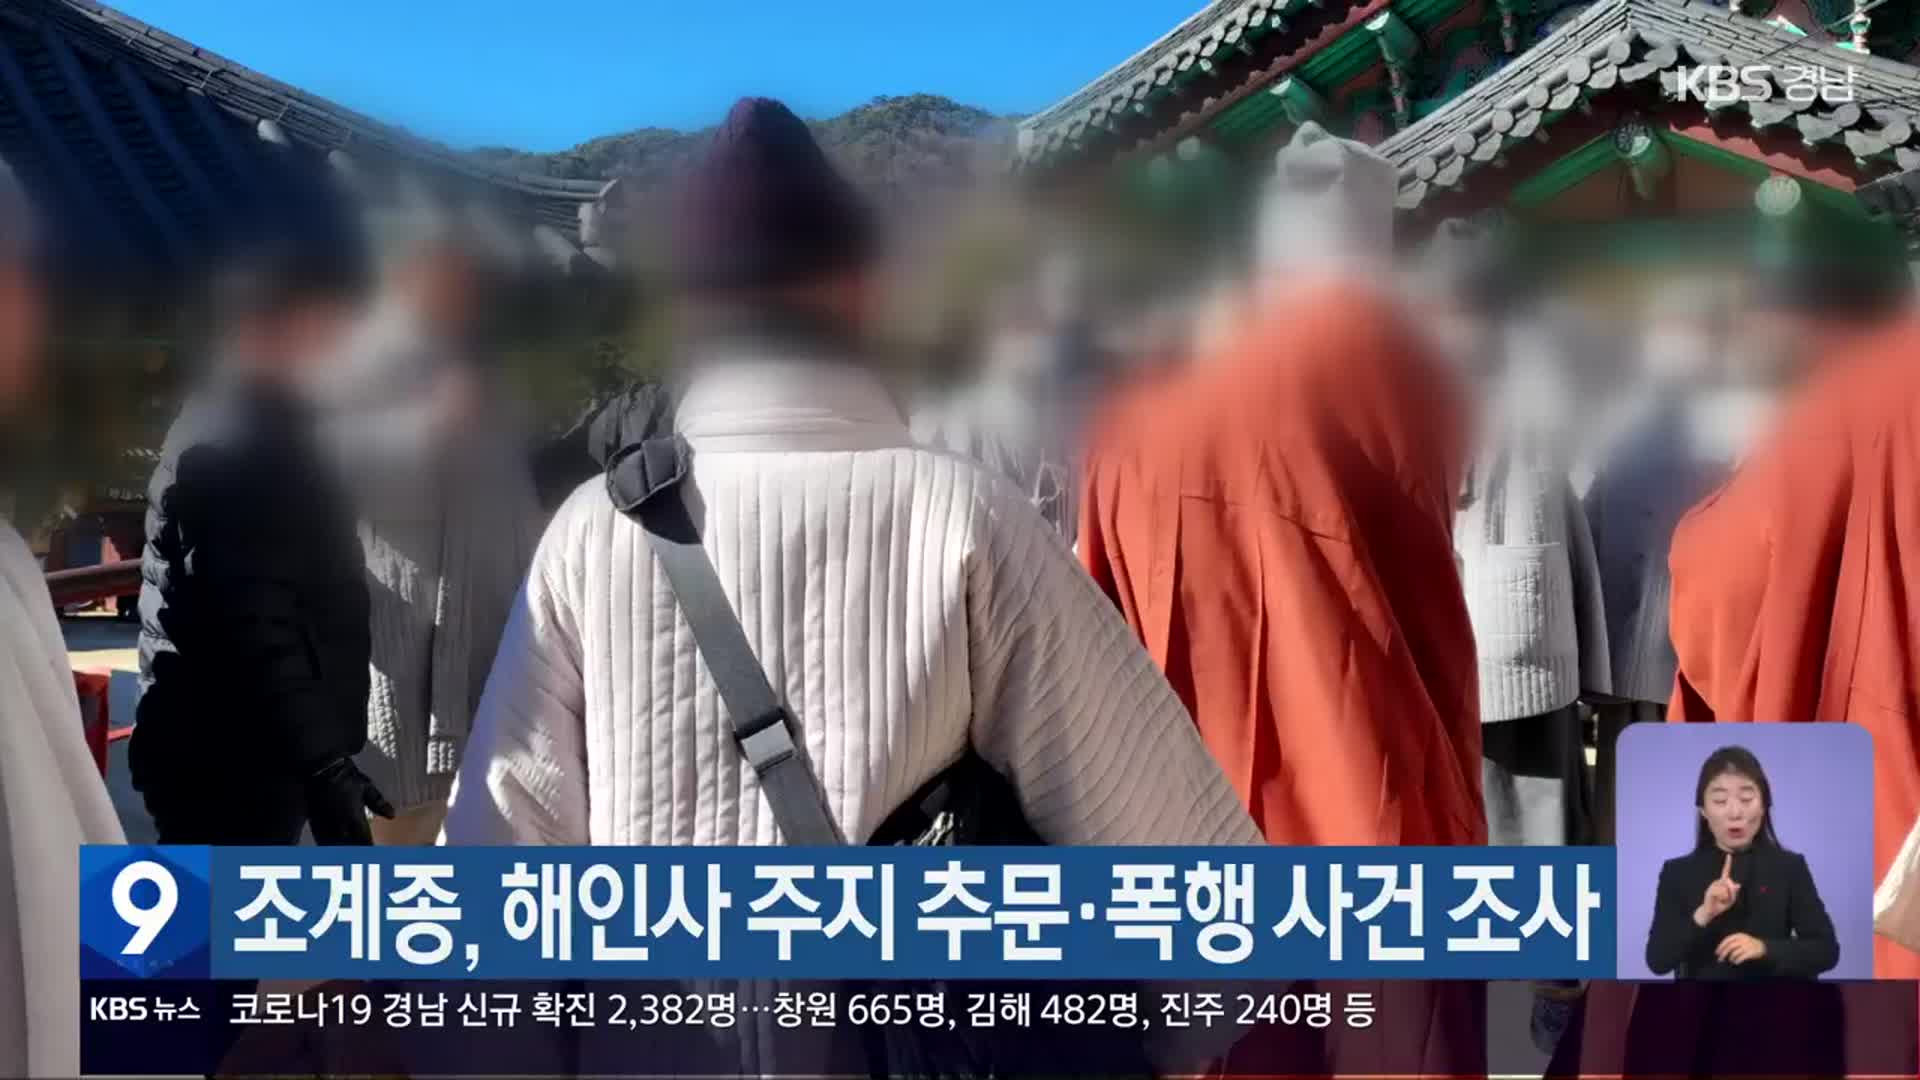 조계종, 해인사 주지 추문·폭행 사건 조사